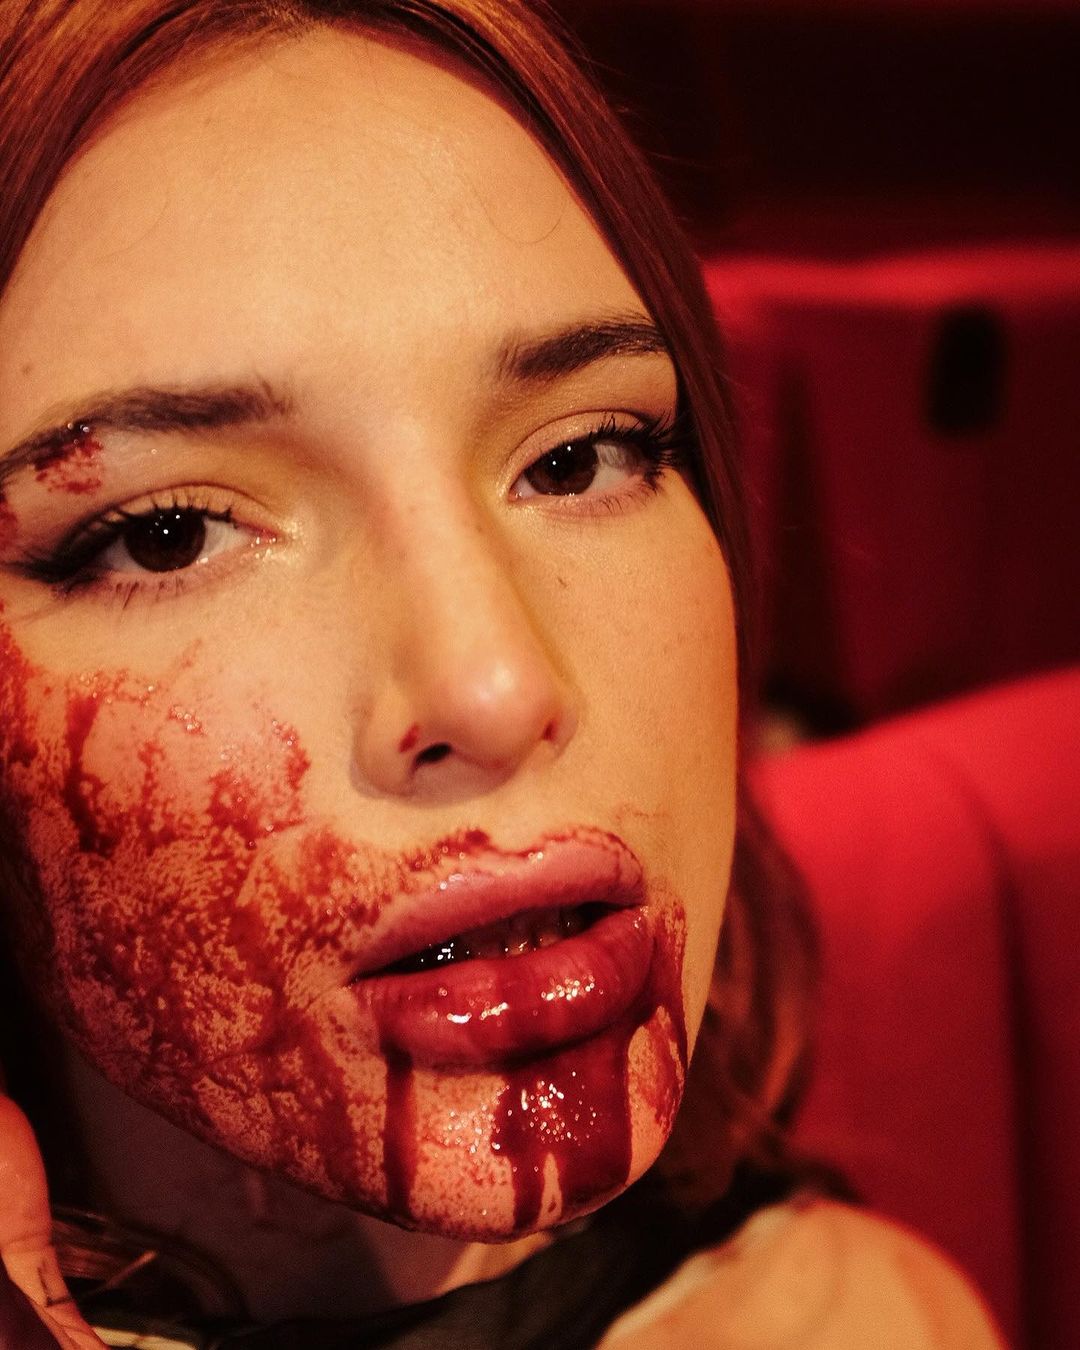 Photos n°2 : Bella Thorne’s Bloody Display!